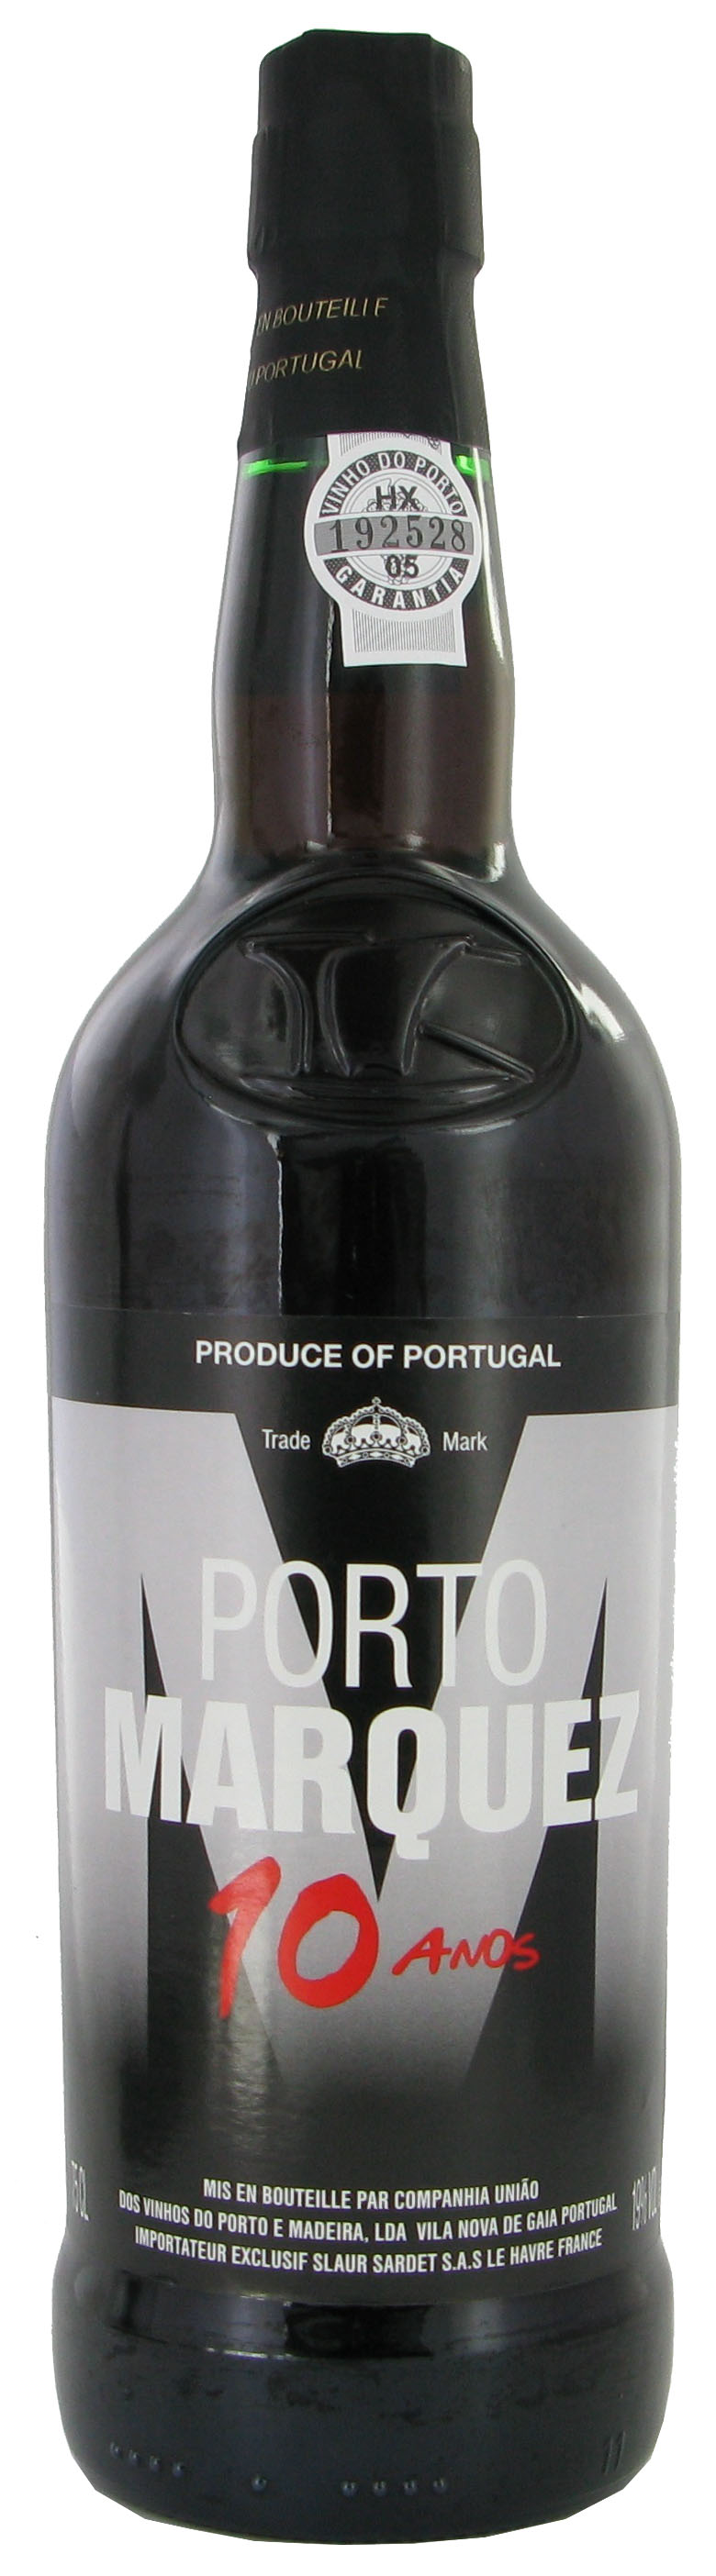 MARQUEZ Porto 10ans 19 75cl 0P1D 12 2014